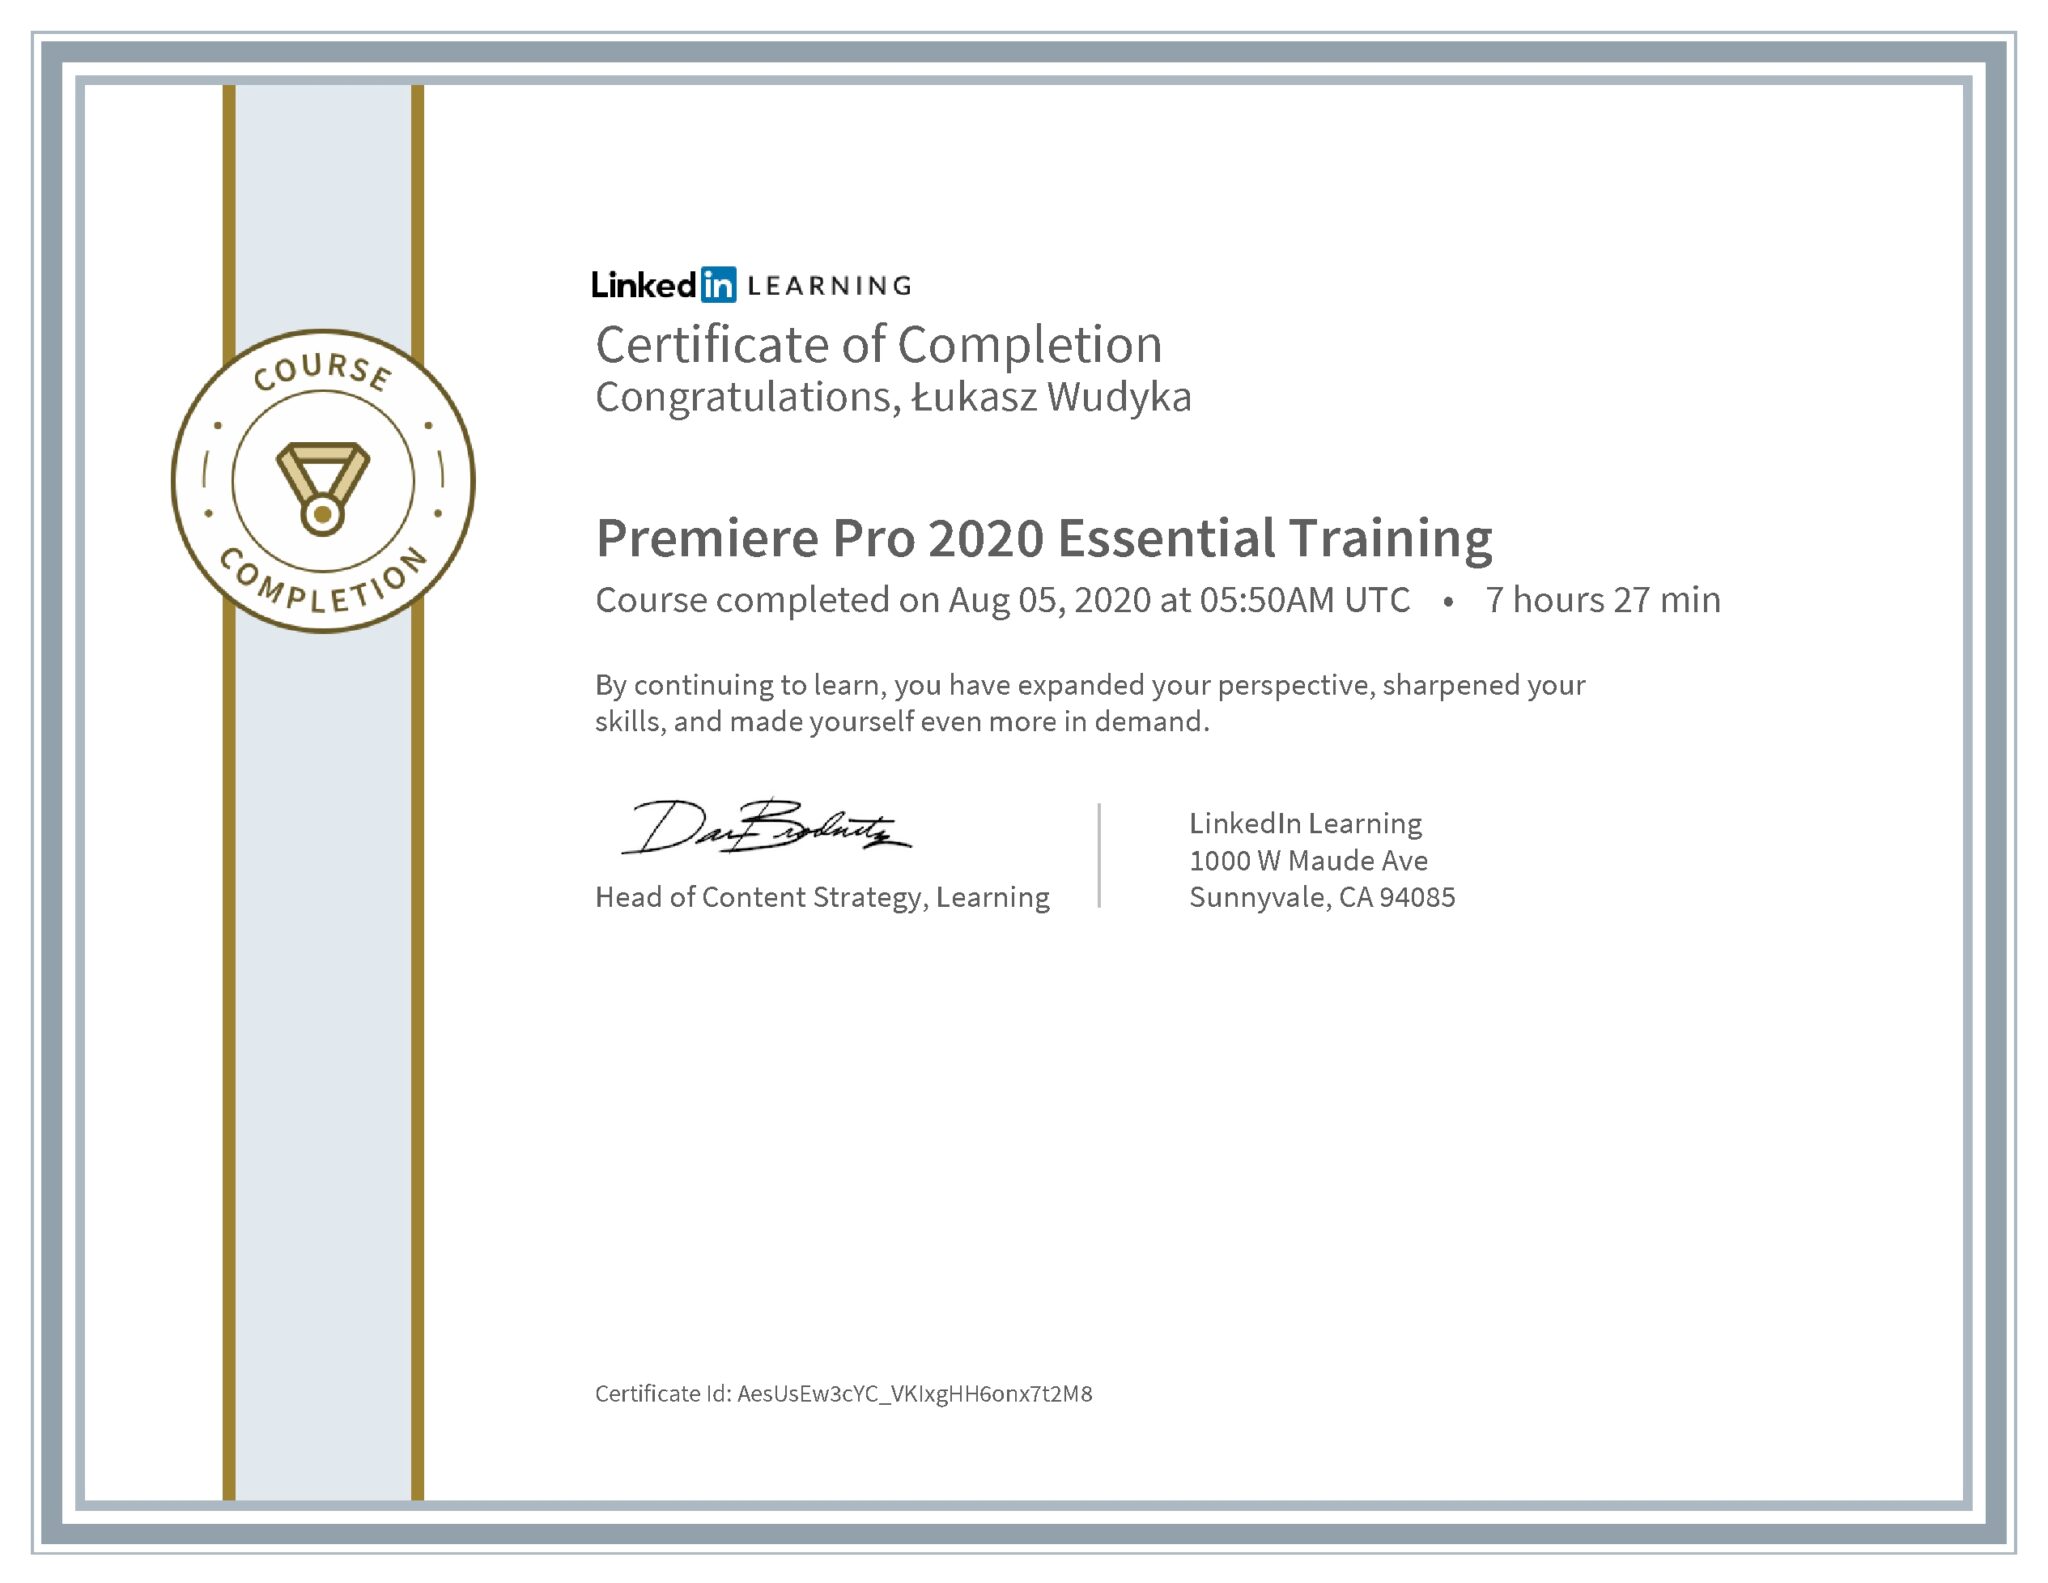 Łukasz Wudyka certyfikat LinkedIn Premiere Pro 2020 Essential Training